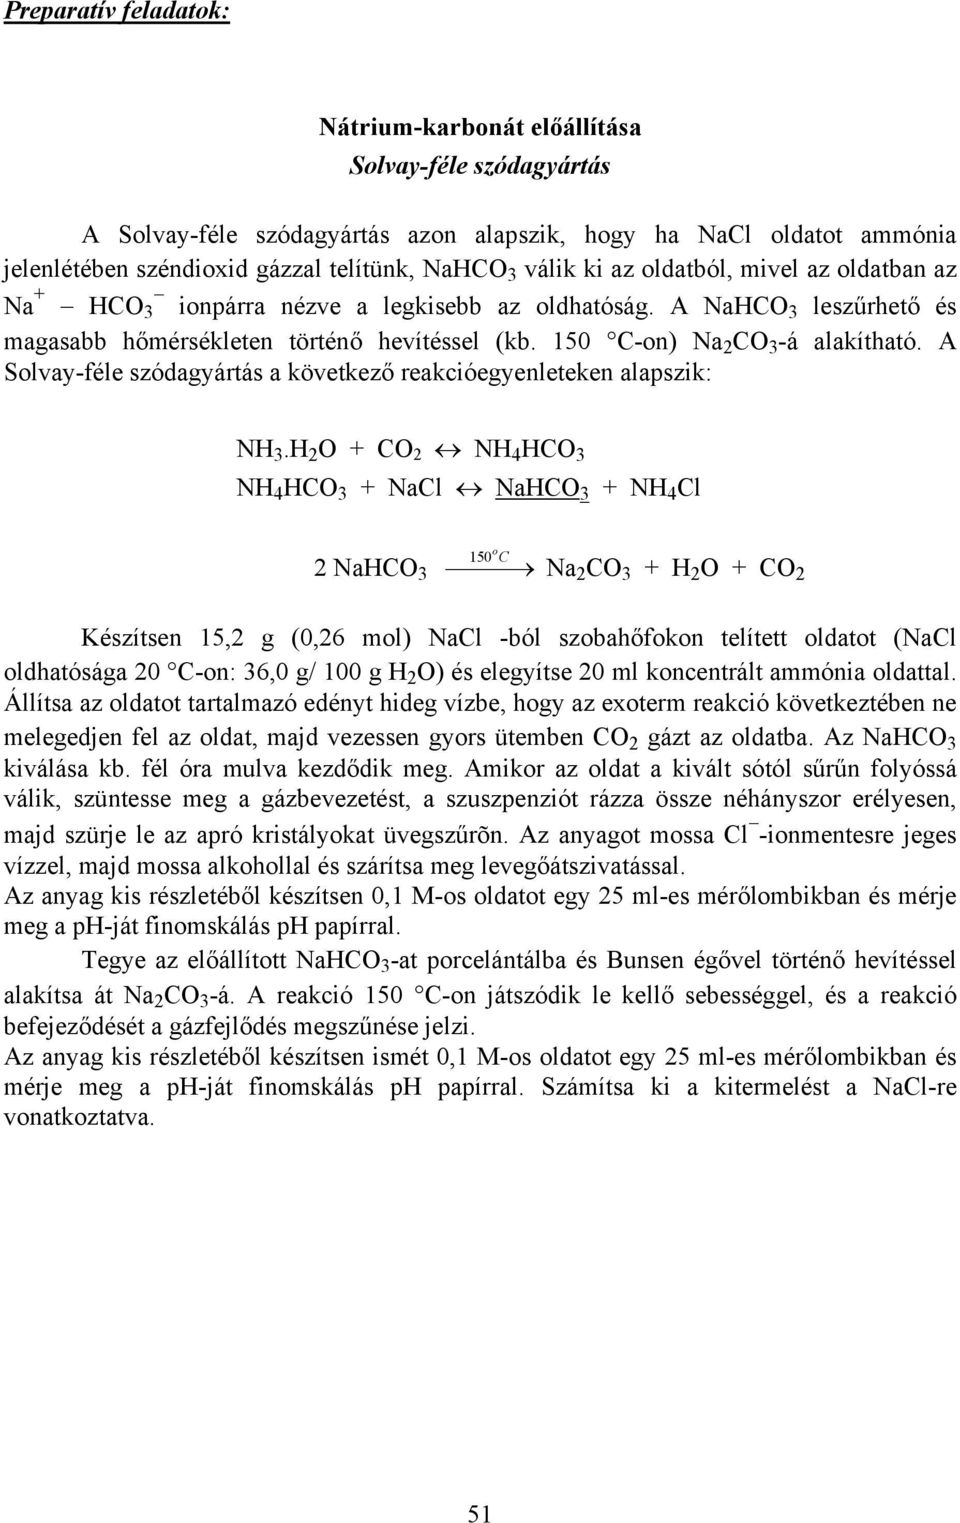 A Solvay-féle szódagyártás a következő reakcióegyenleteken alapszik: NH 3.